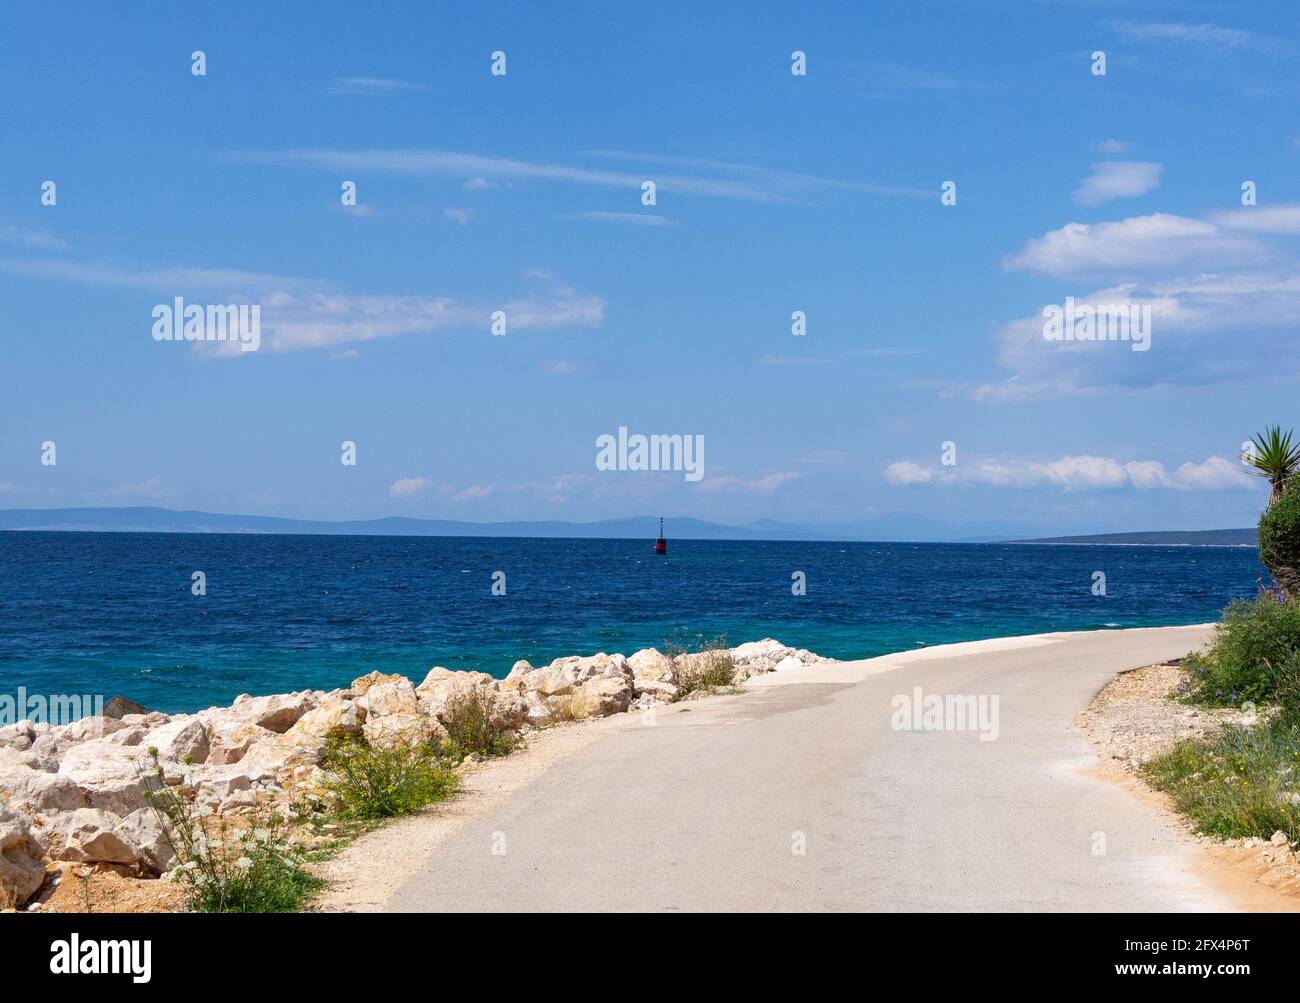 Croatie. L'île de Pag. Un virage routier sur la côte Adriatique. Été, mer d'azur, ciel bleu. Banque D'Images